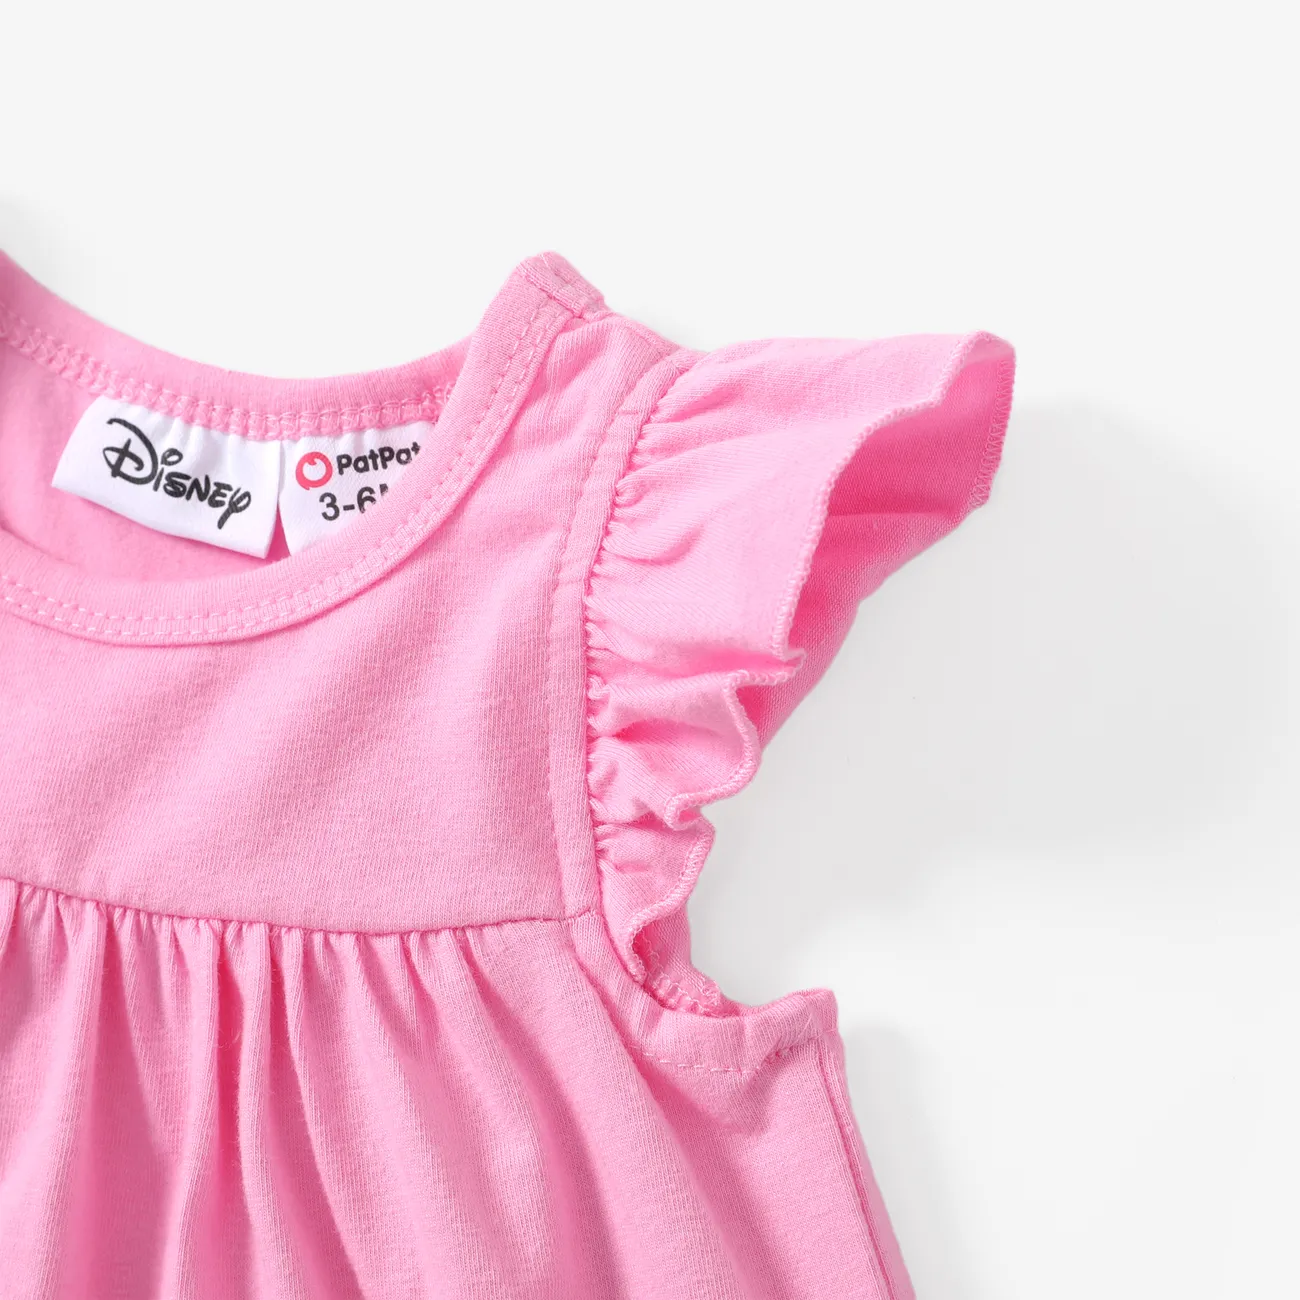 迪士尼米奇和朋友們嬰兒/幼兒女孩 2 件裝棉質角色印花荷葉邊袖上衣搭配格紋短褲套裝 粉色 big image 1